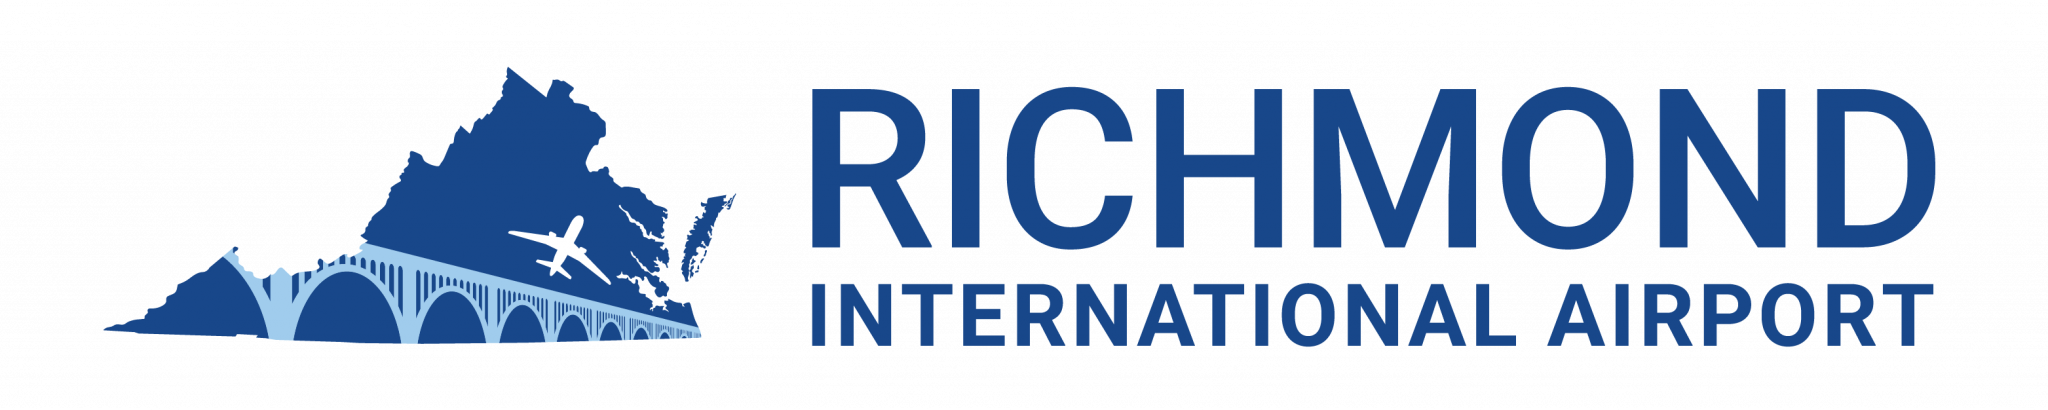 RIC Logo